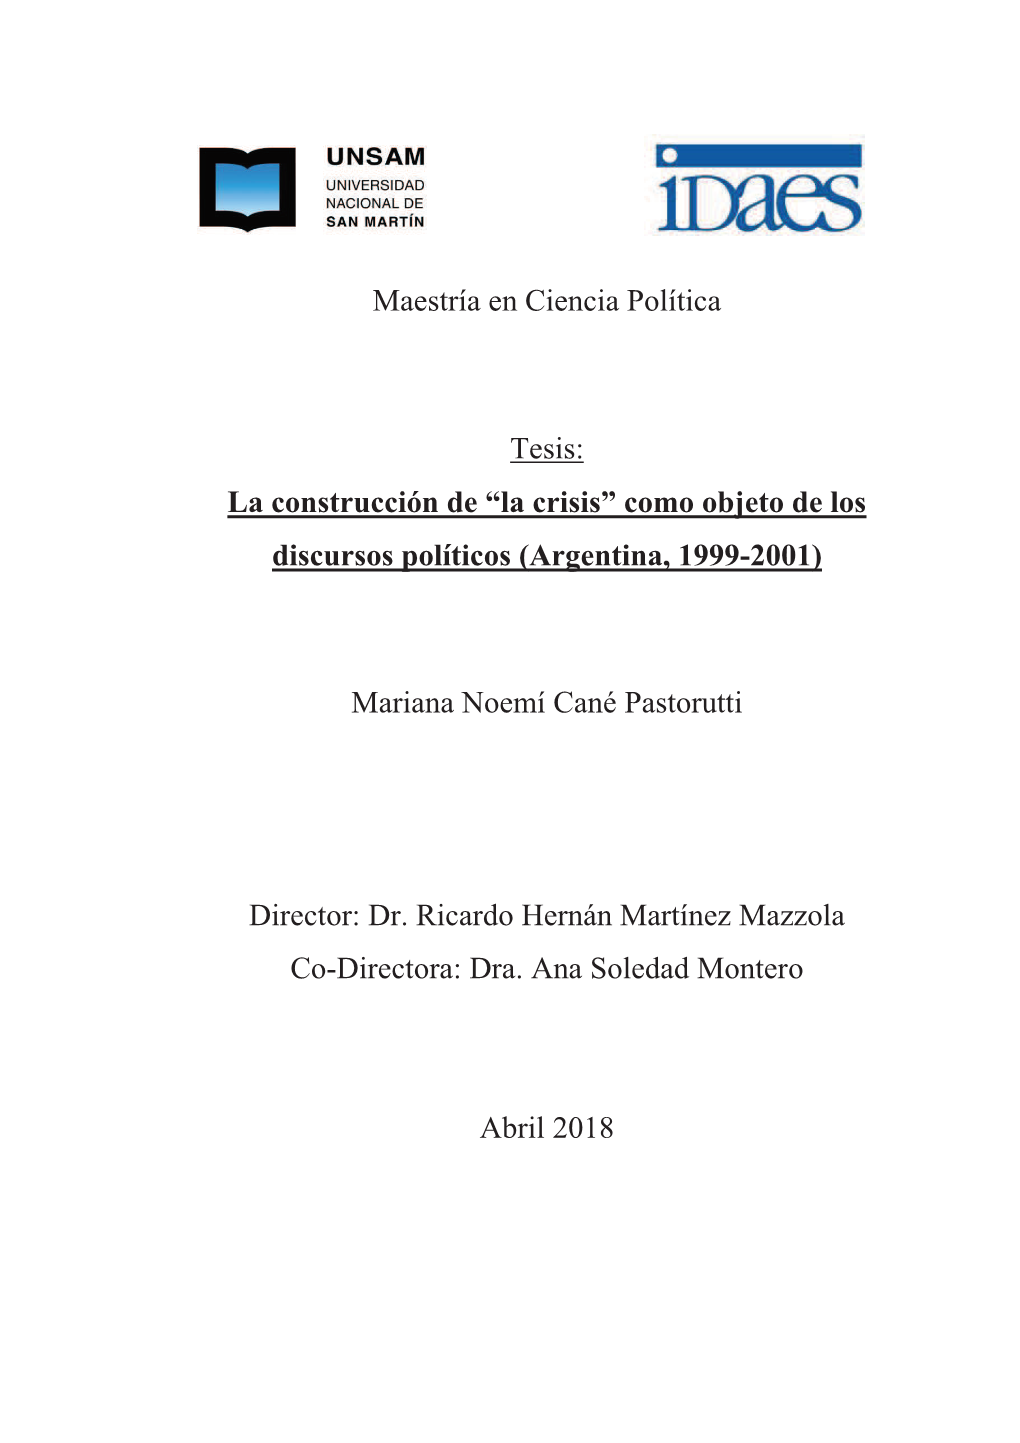 Como Objeto De Los Discursos Políticos (Argentina, 1999-2001)